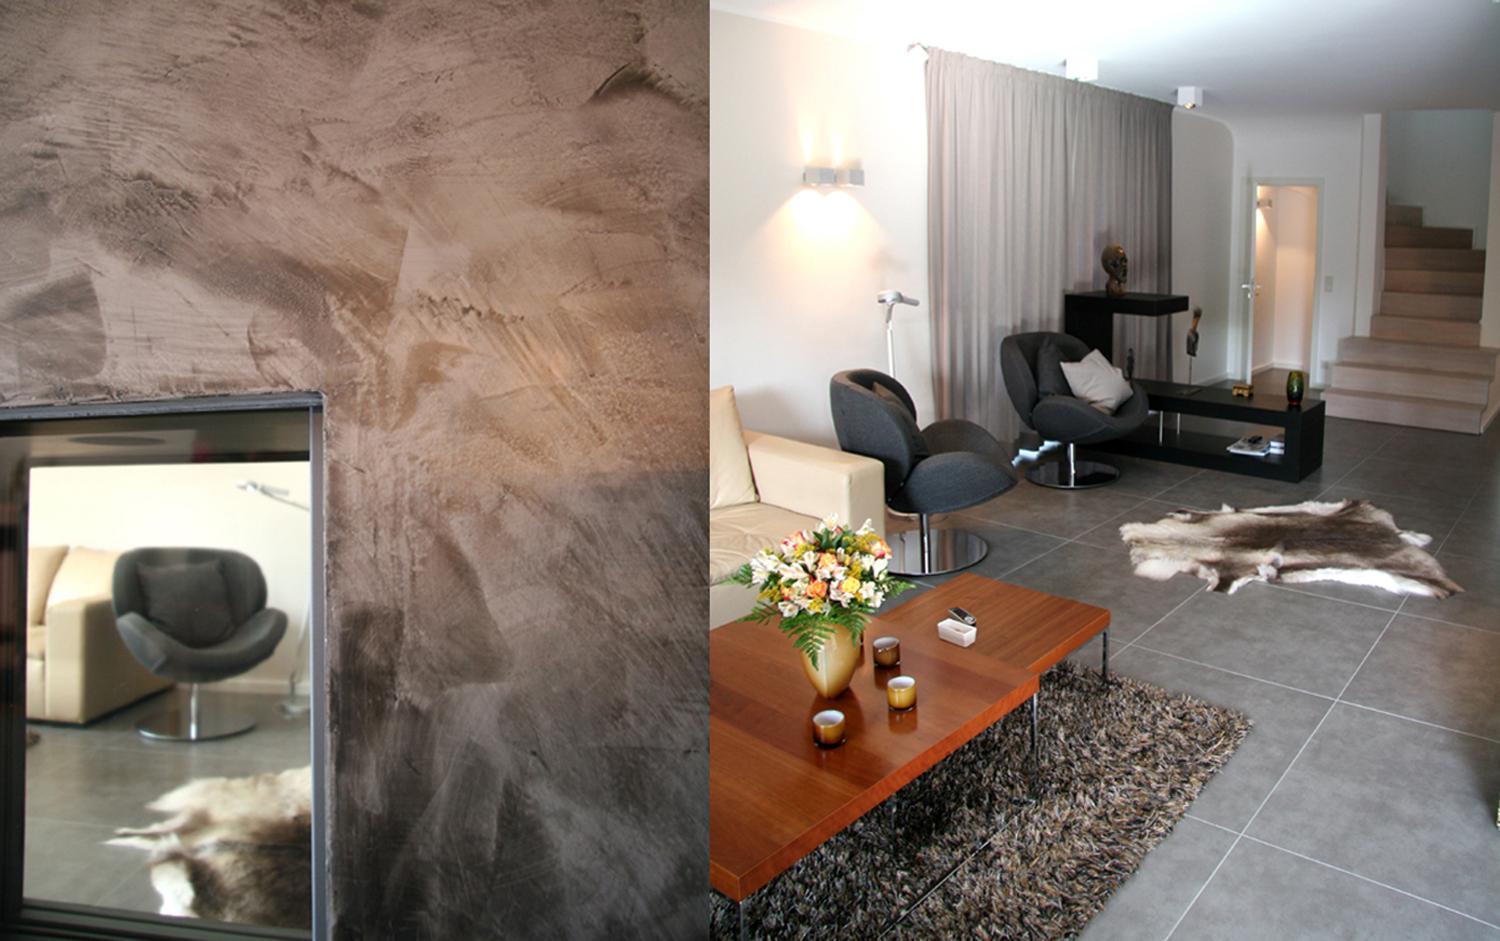 Wohnzimmer mit Kamin #couchtisch #kamin #wohnzimmer #spachteltechnik #raumdesign #lesesessel #innenarchitektur ©Silja Zürner